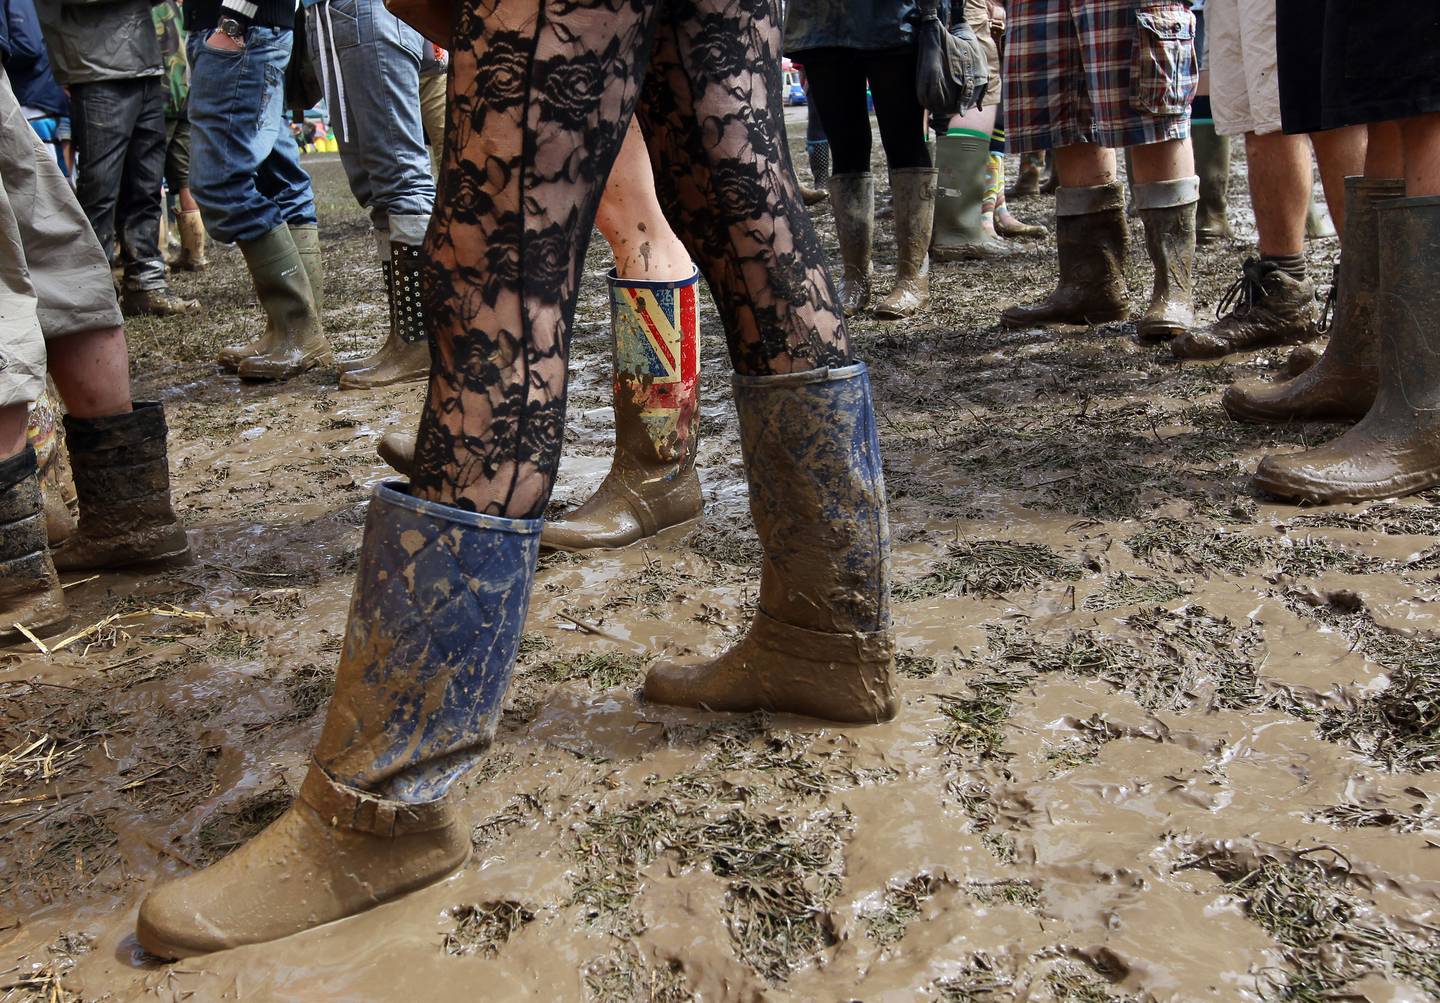 Støvler har vært fast inventar for festivalpublikummet på Glastonbury i Storbritannia i flere år.